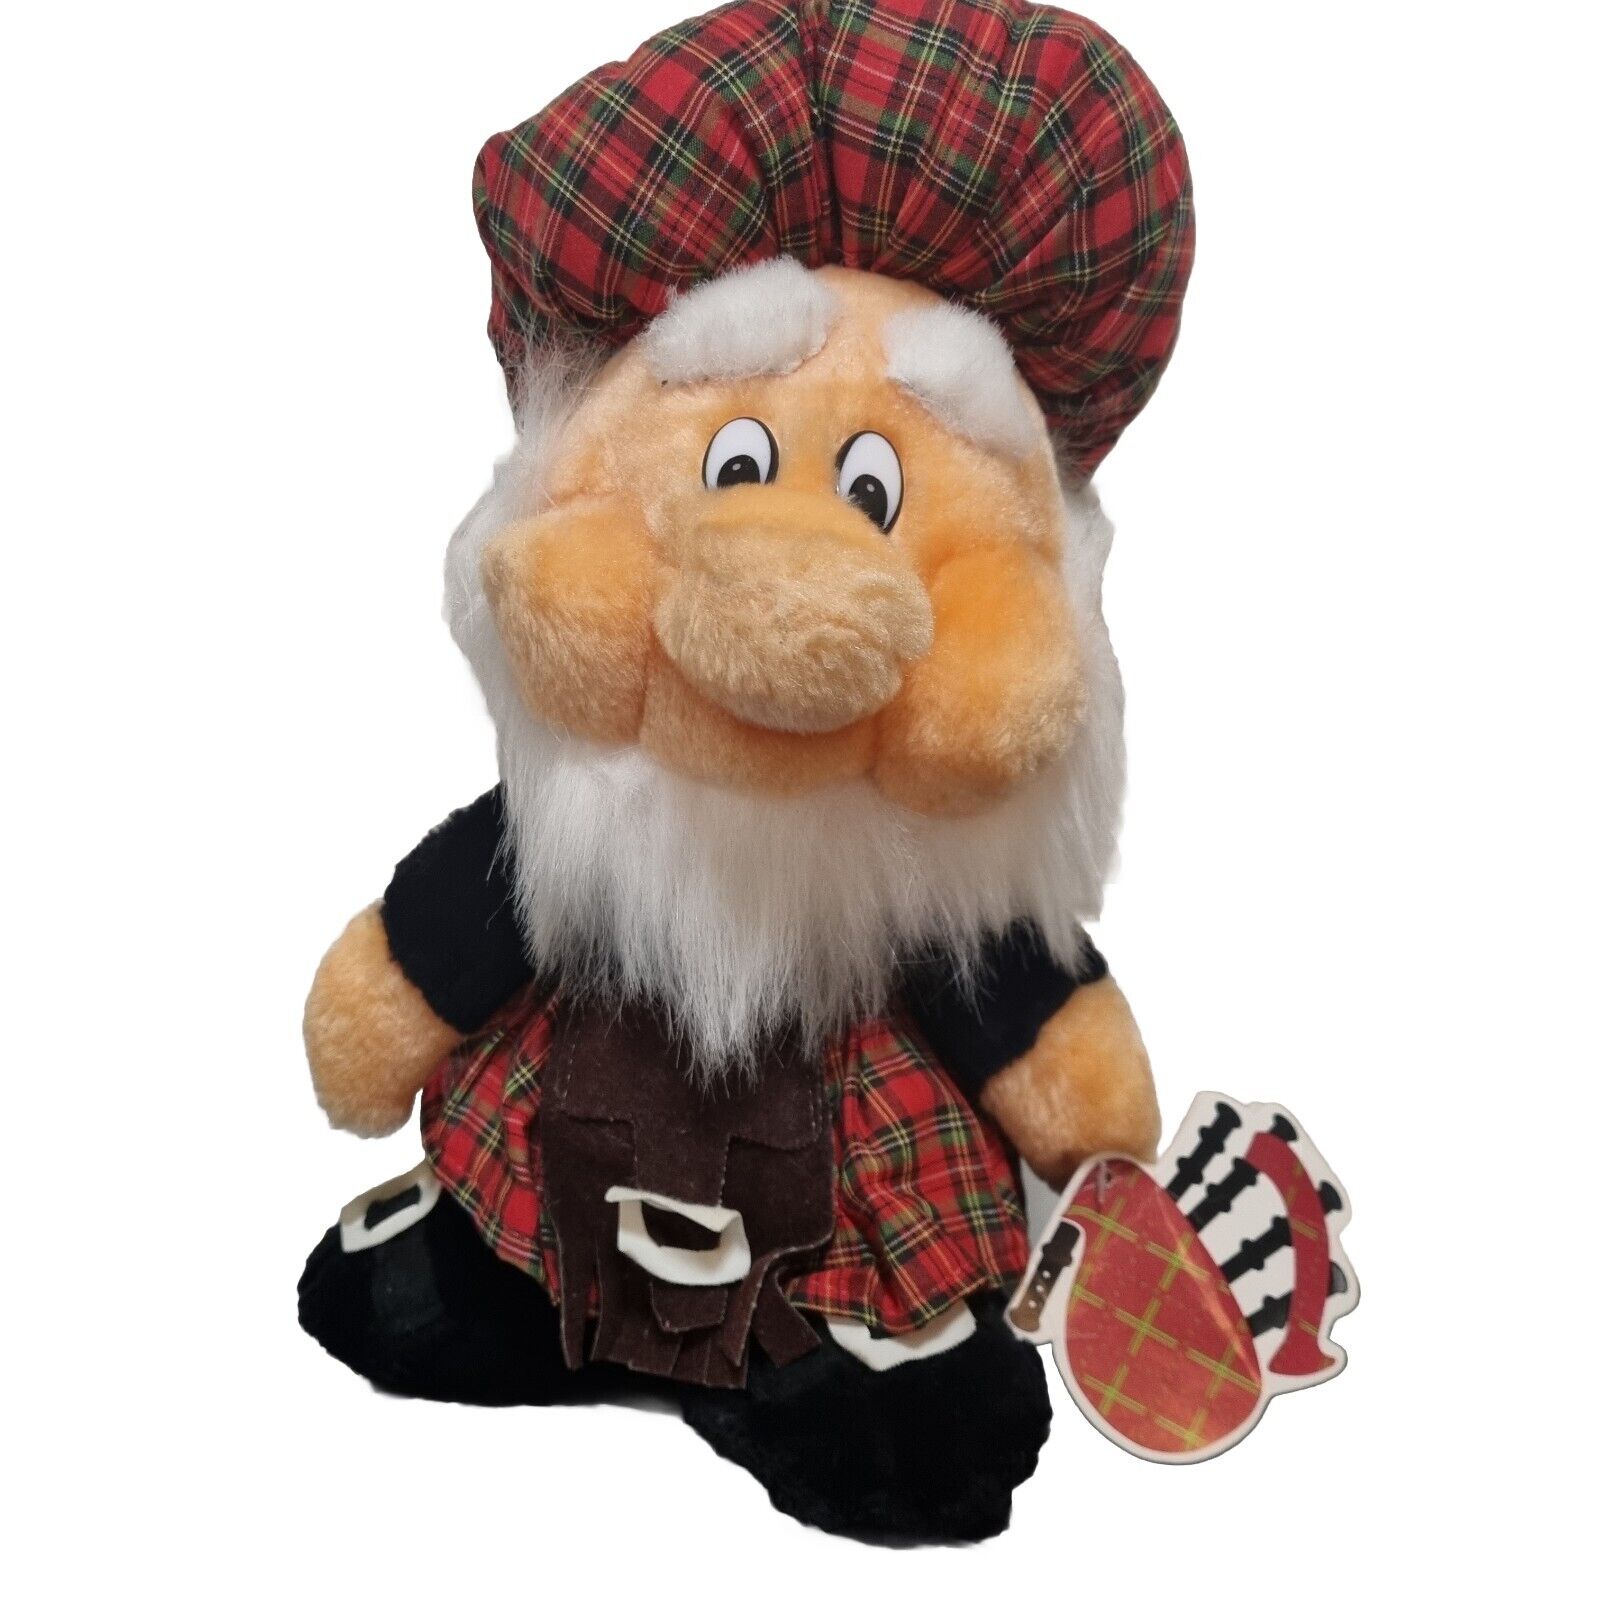 Scotsman Plush Toy Plaid Kilt & Hat with Tag Scottish Man Souvenir Merchandise